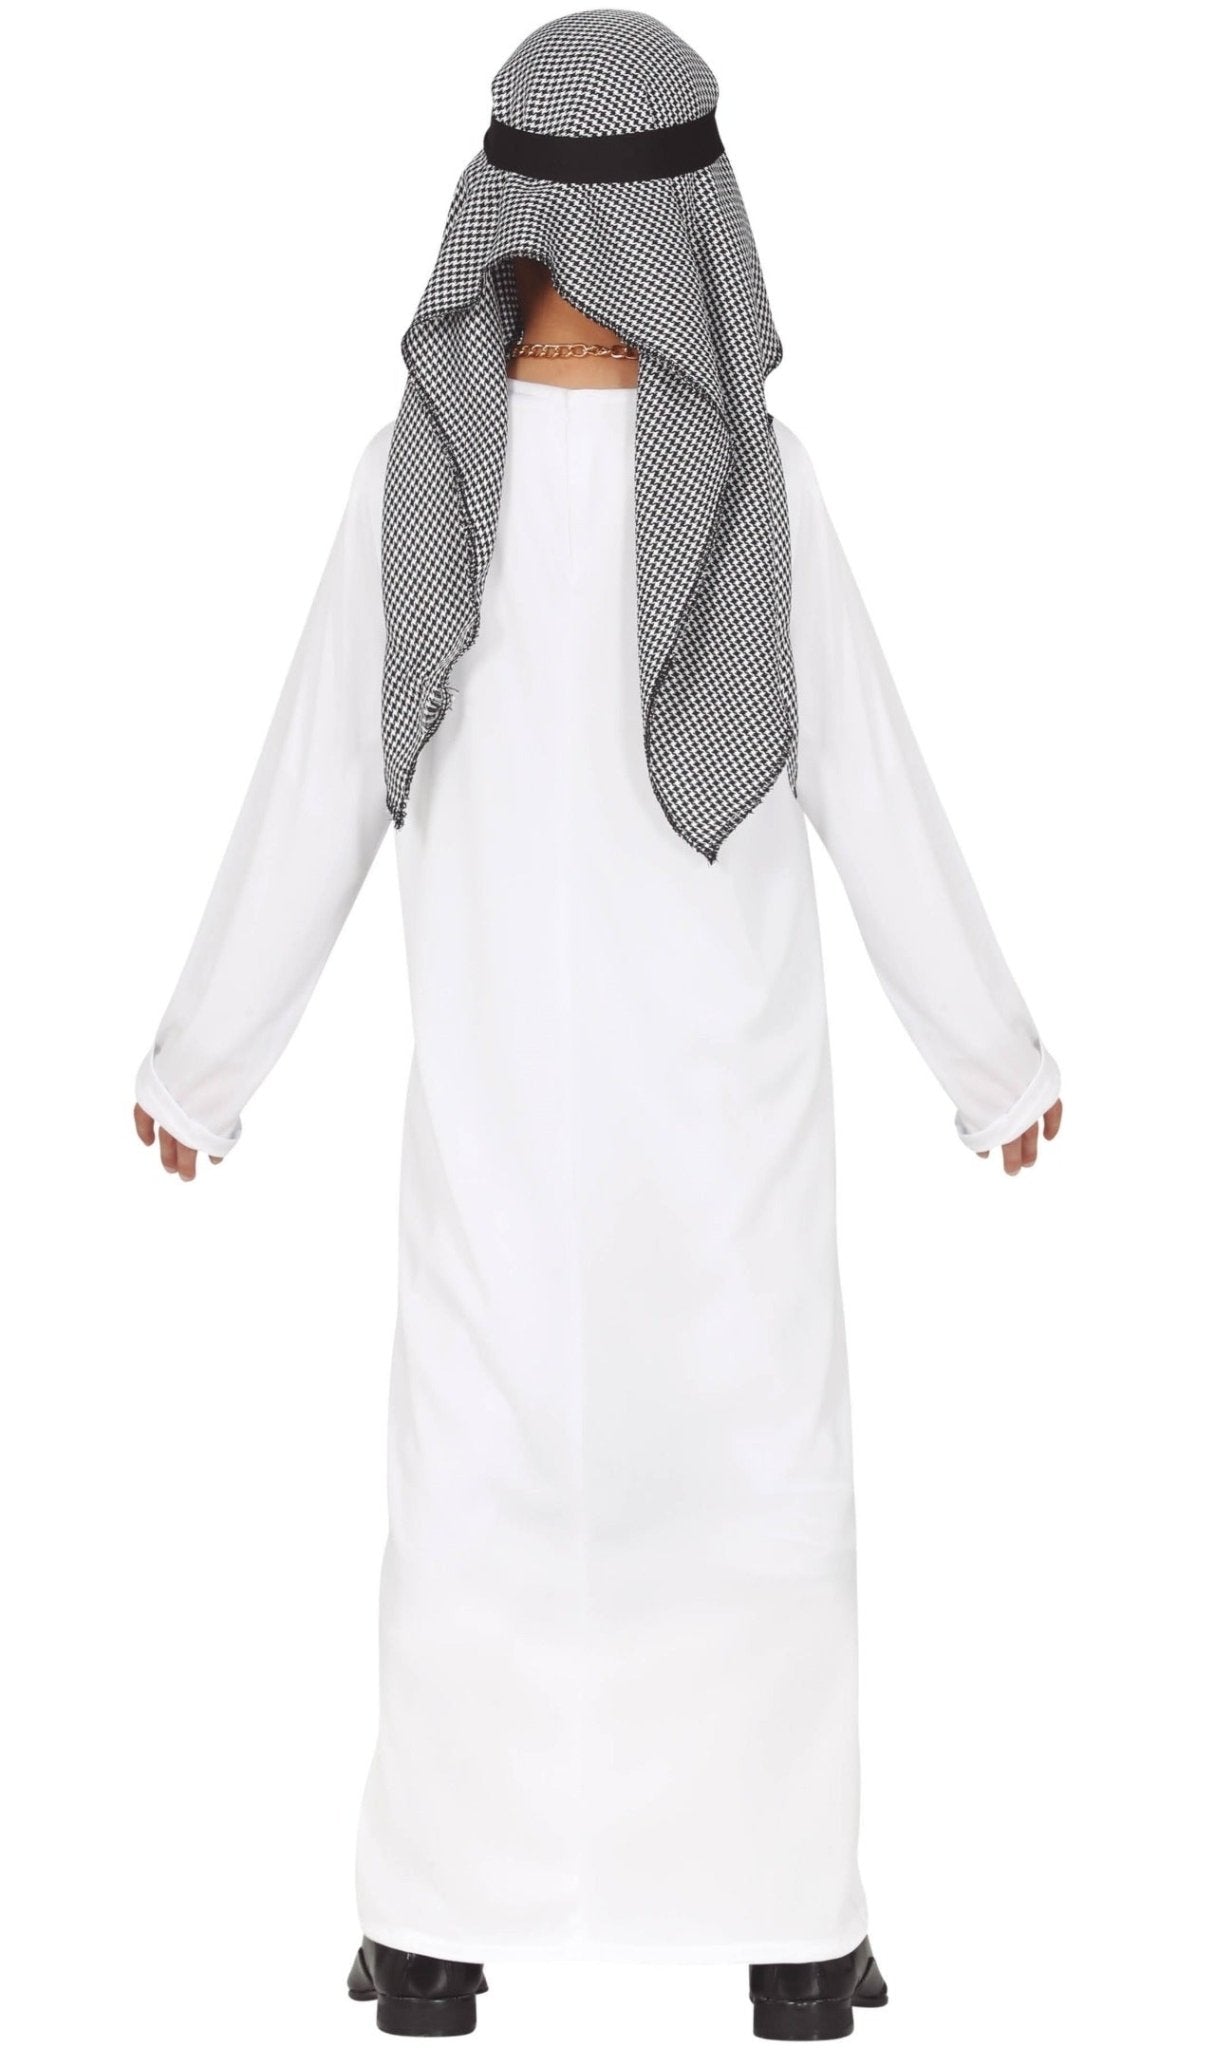 Disfraz de Jeque Árabe Saif para infantil